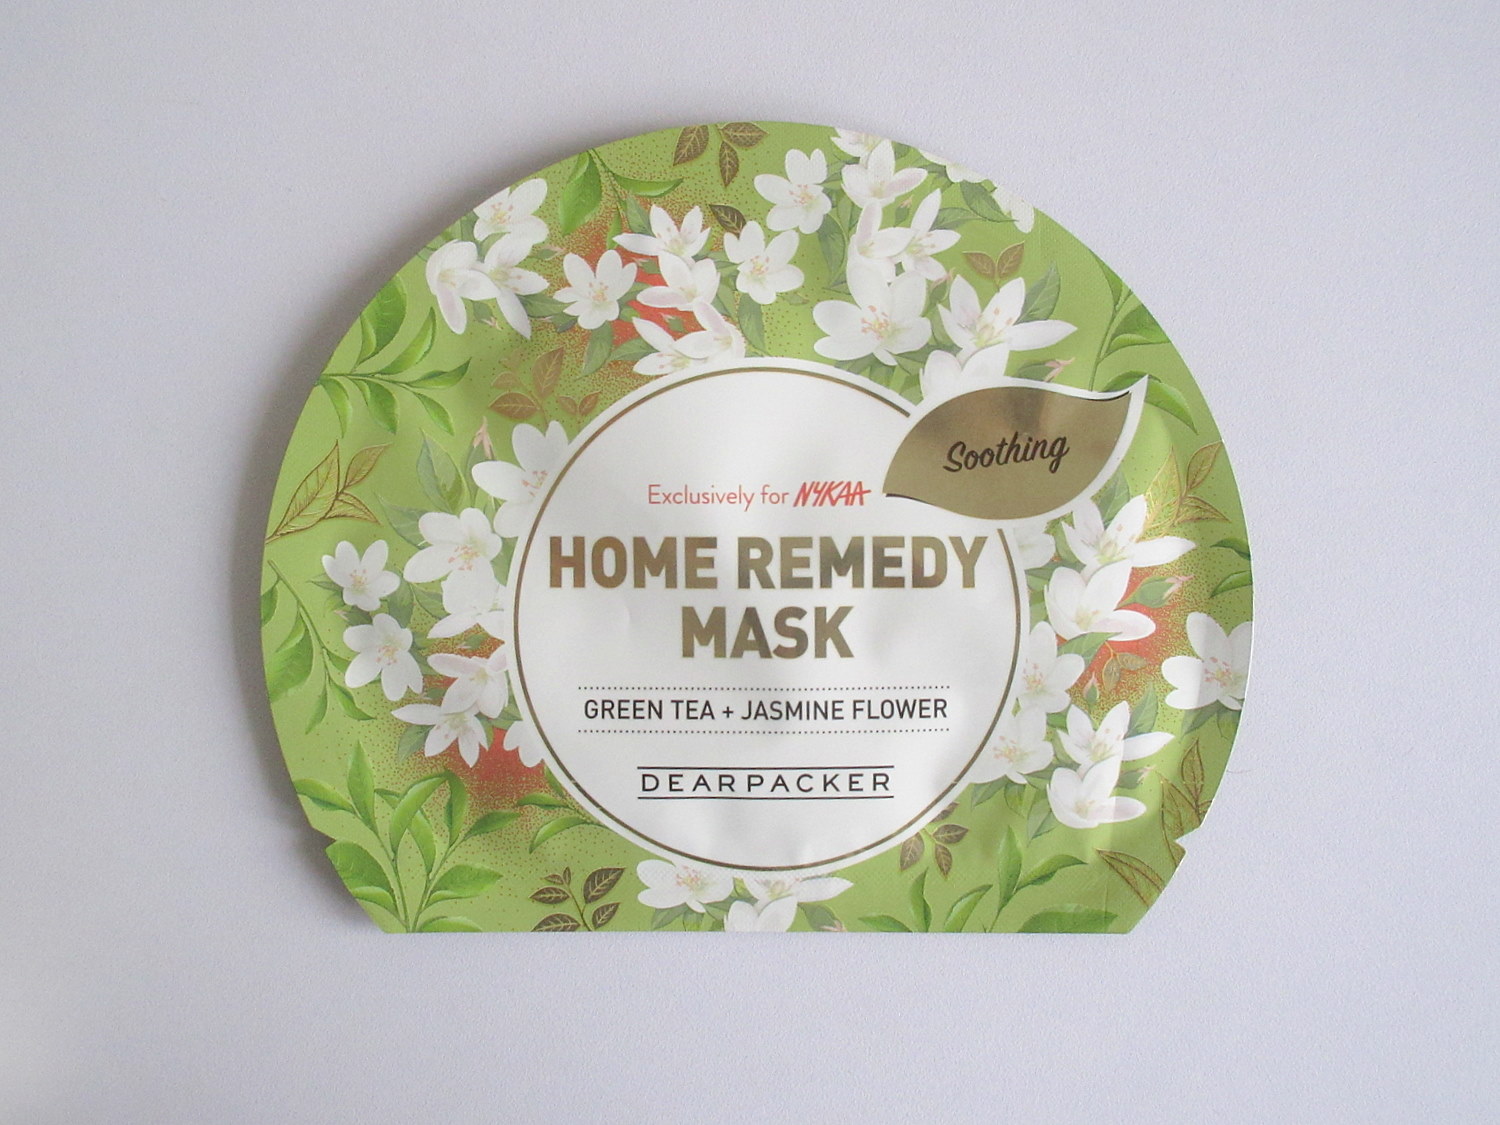 Dear Packer Home Remedy Mask Green Tea + Jasmine Flower